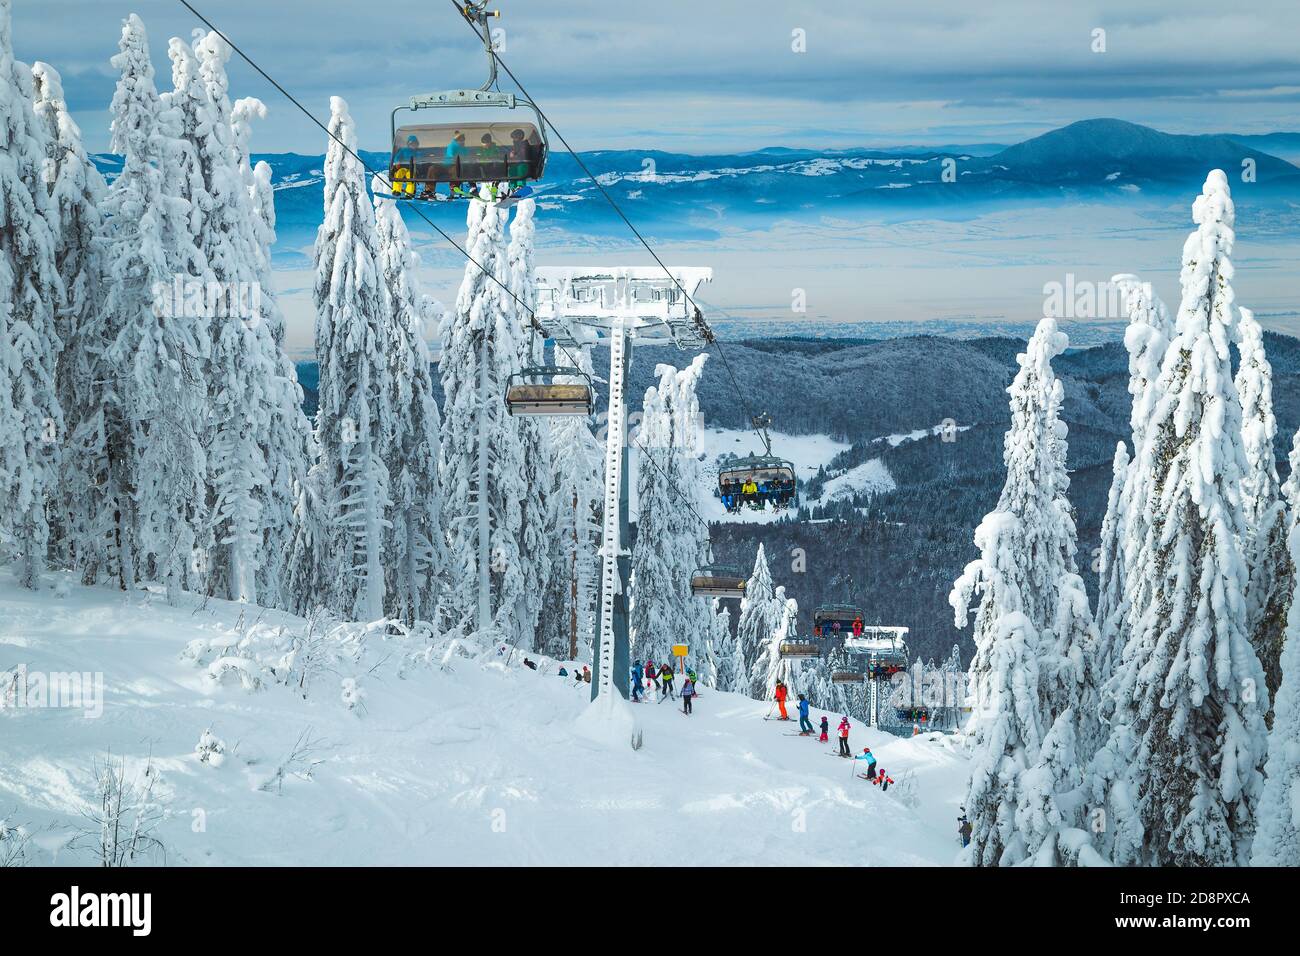 Gli sciatori godono della vista sugli impianti di risalita. Luogo meraviglioso con pini innevati e sciatori sulle piste, Poiana Brasov resort, Transilvania, Romania, e Foto Stock